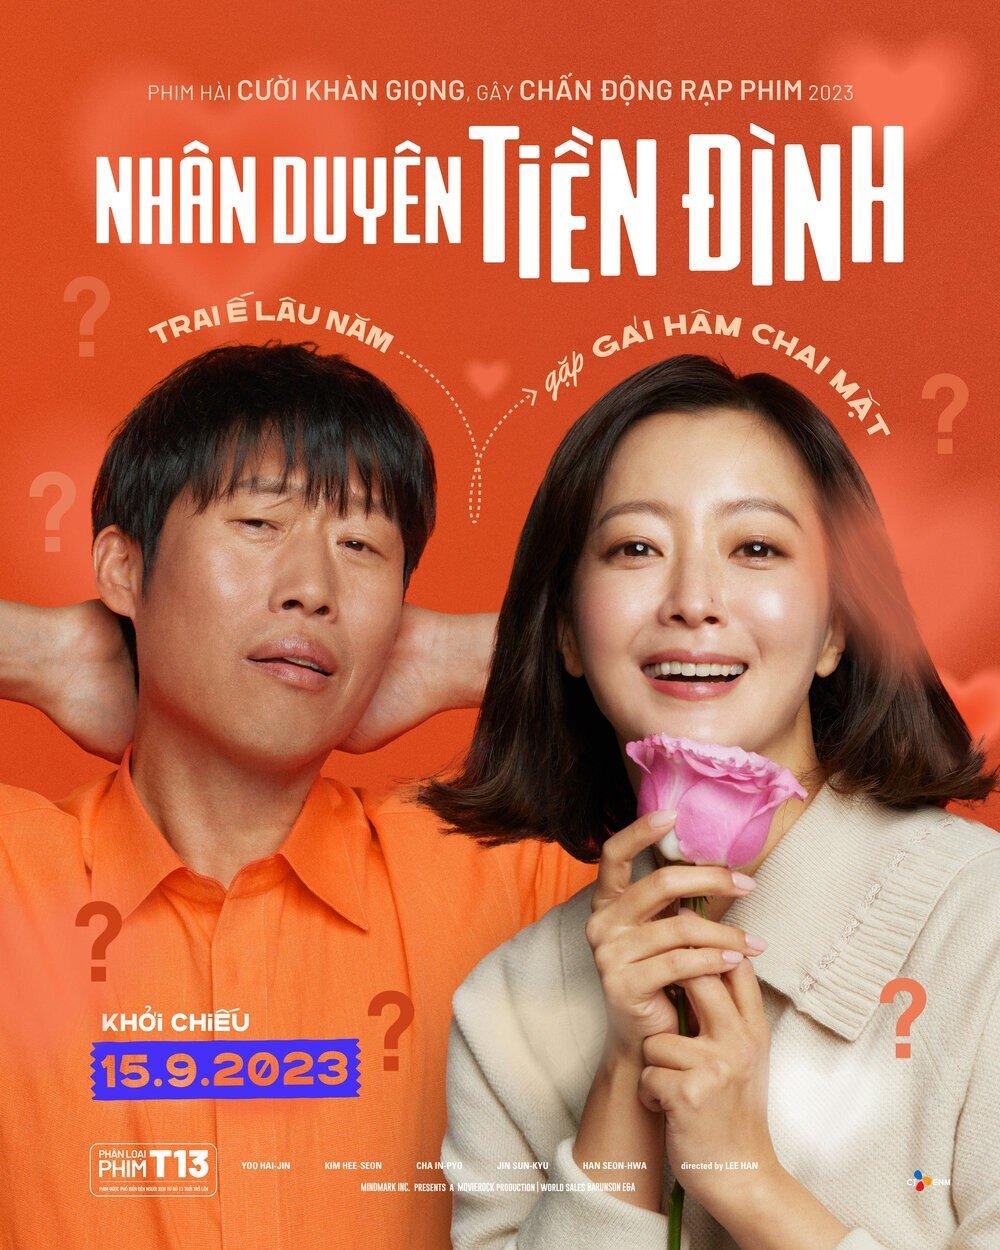 Review Nhân Duyên Tiền Đình: Cười vỡ rạp với phim của sad thủ Yoo Hae Jin Nhân Duyên Tiền Định phim chiếu rạp Yoo Hae Jin